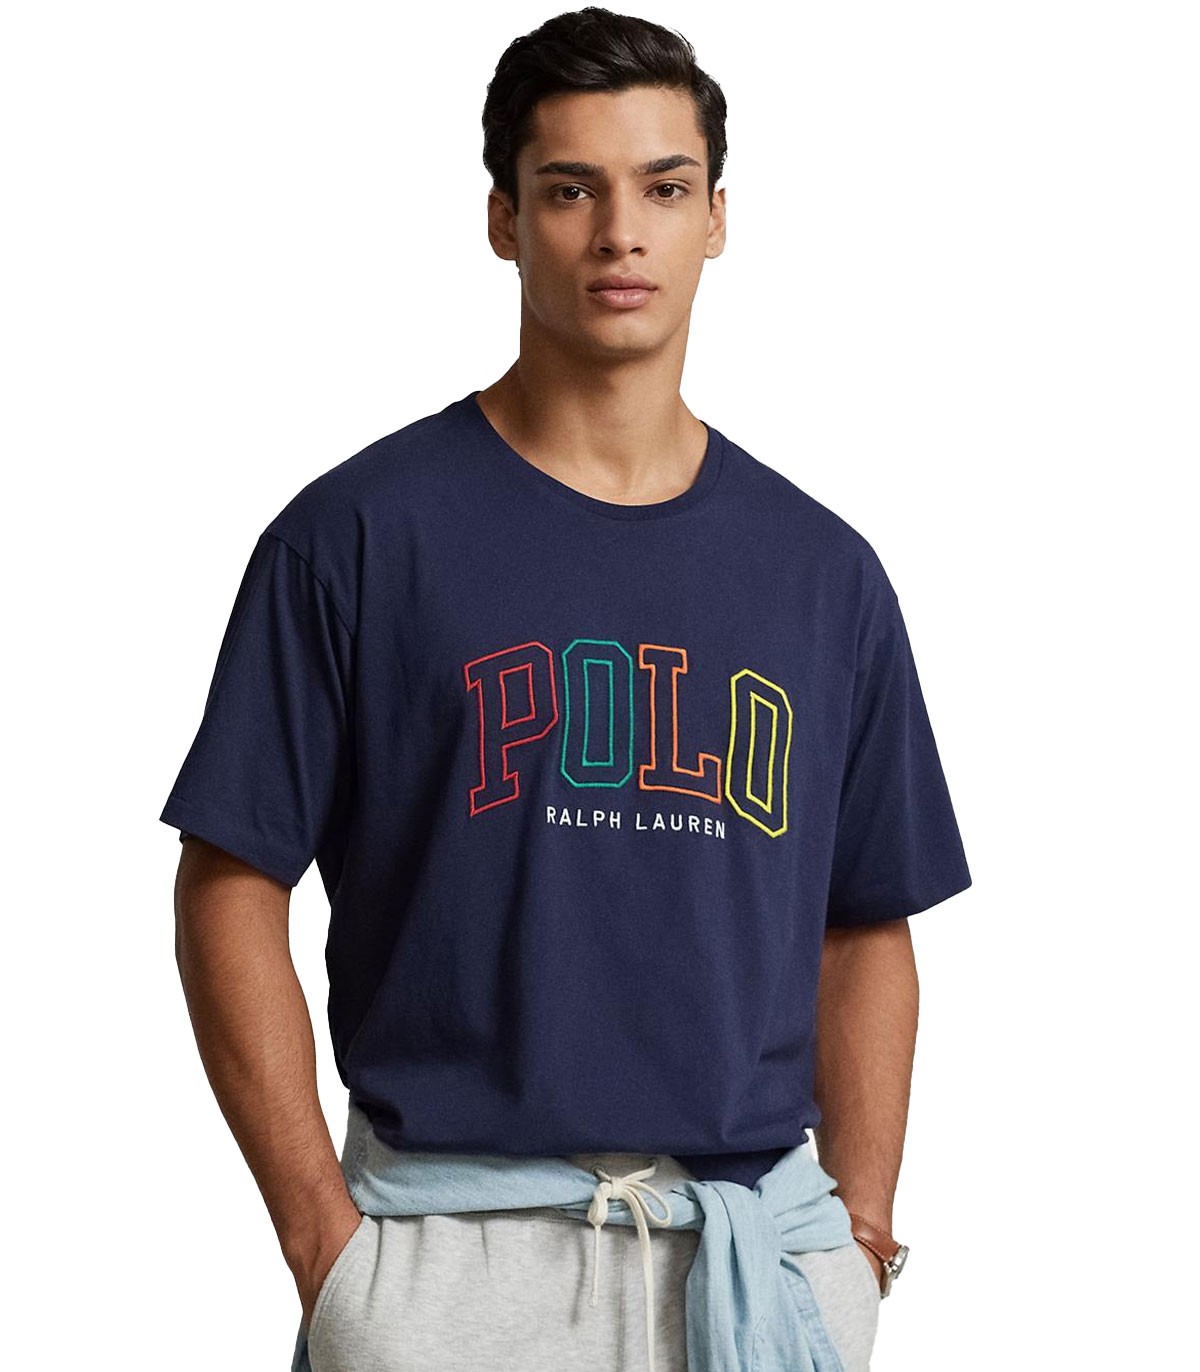 Polo Ralph Lauren - Camiseta con Estampado - Azul